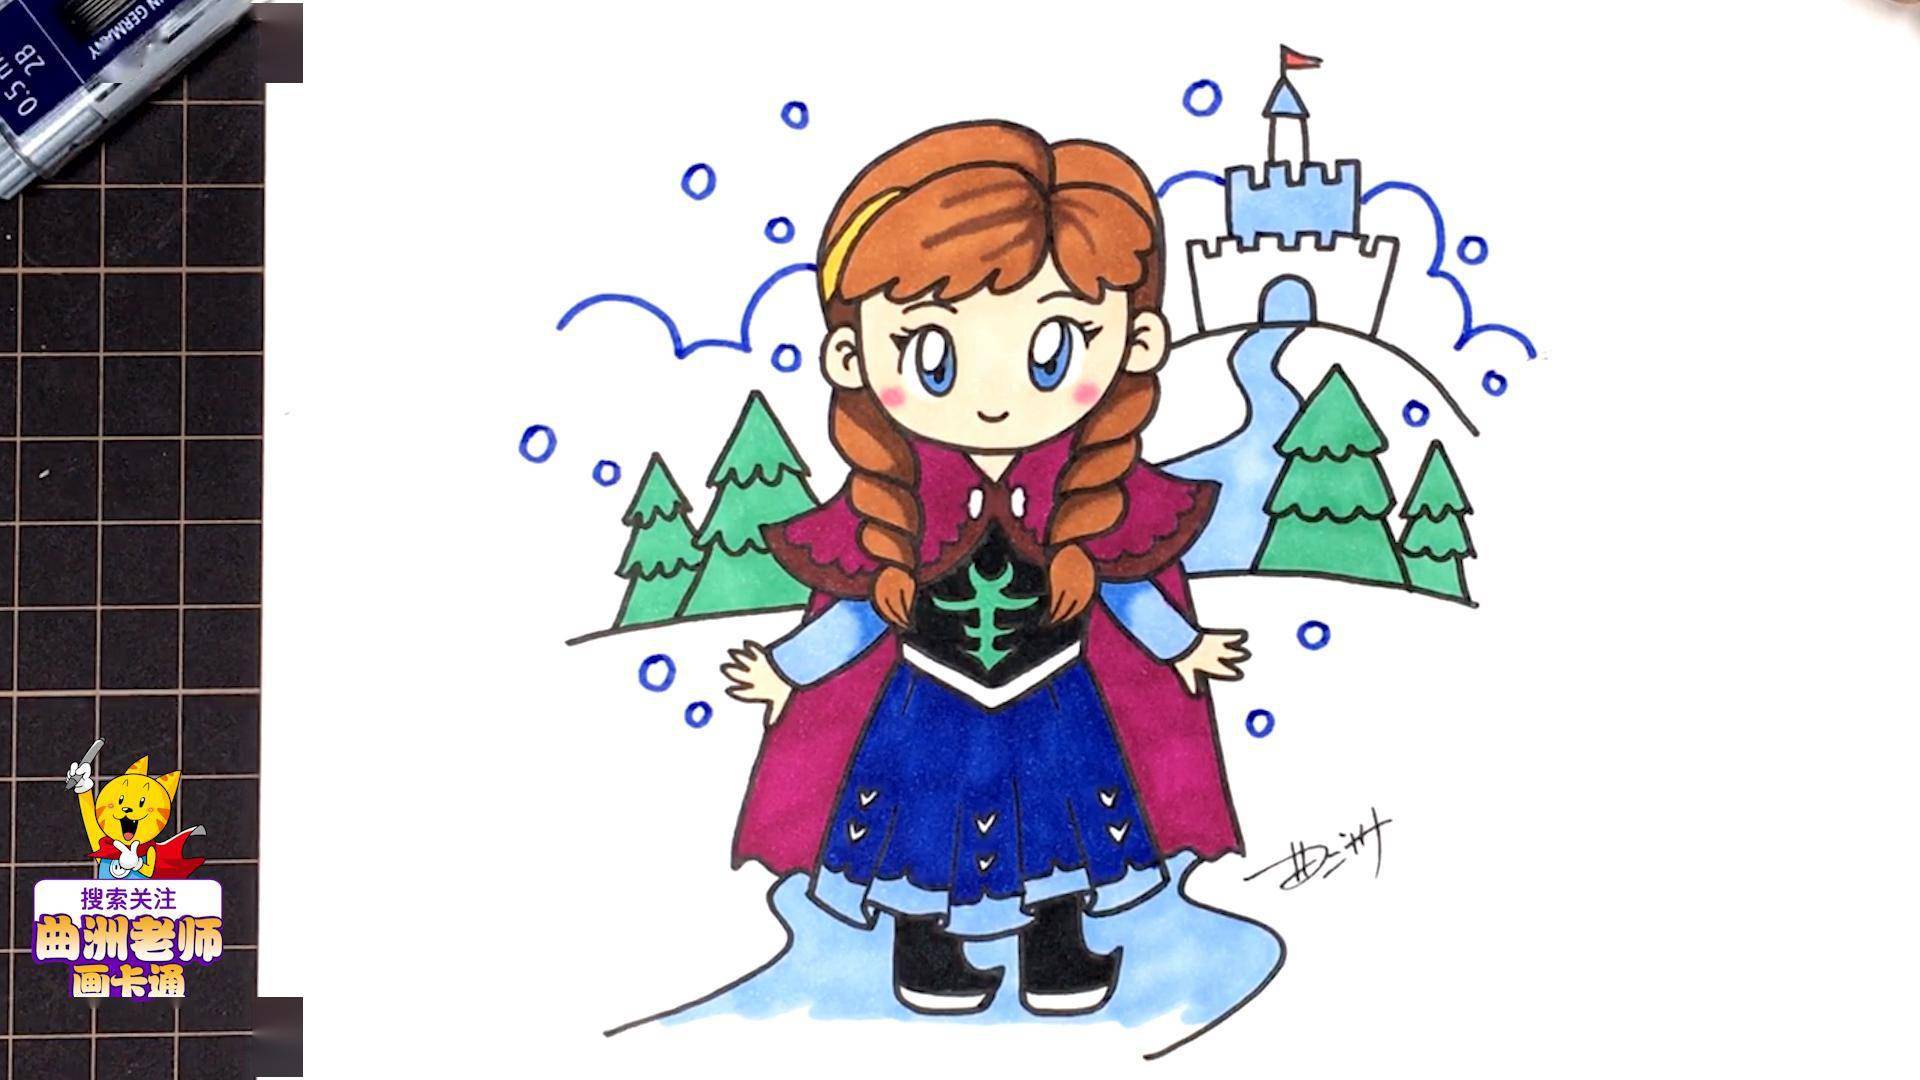 二分钟漫画教程:教你画出冰雪奇缘里的安娜公主